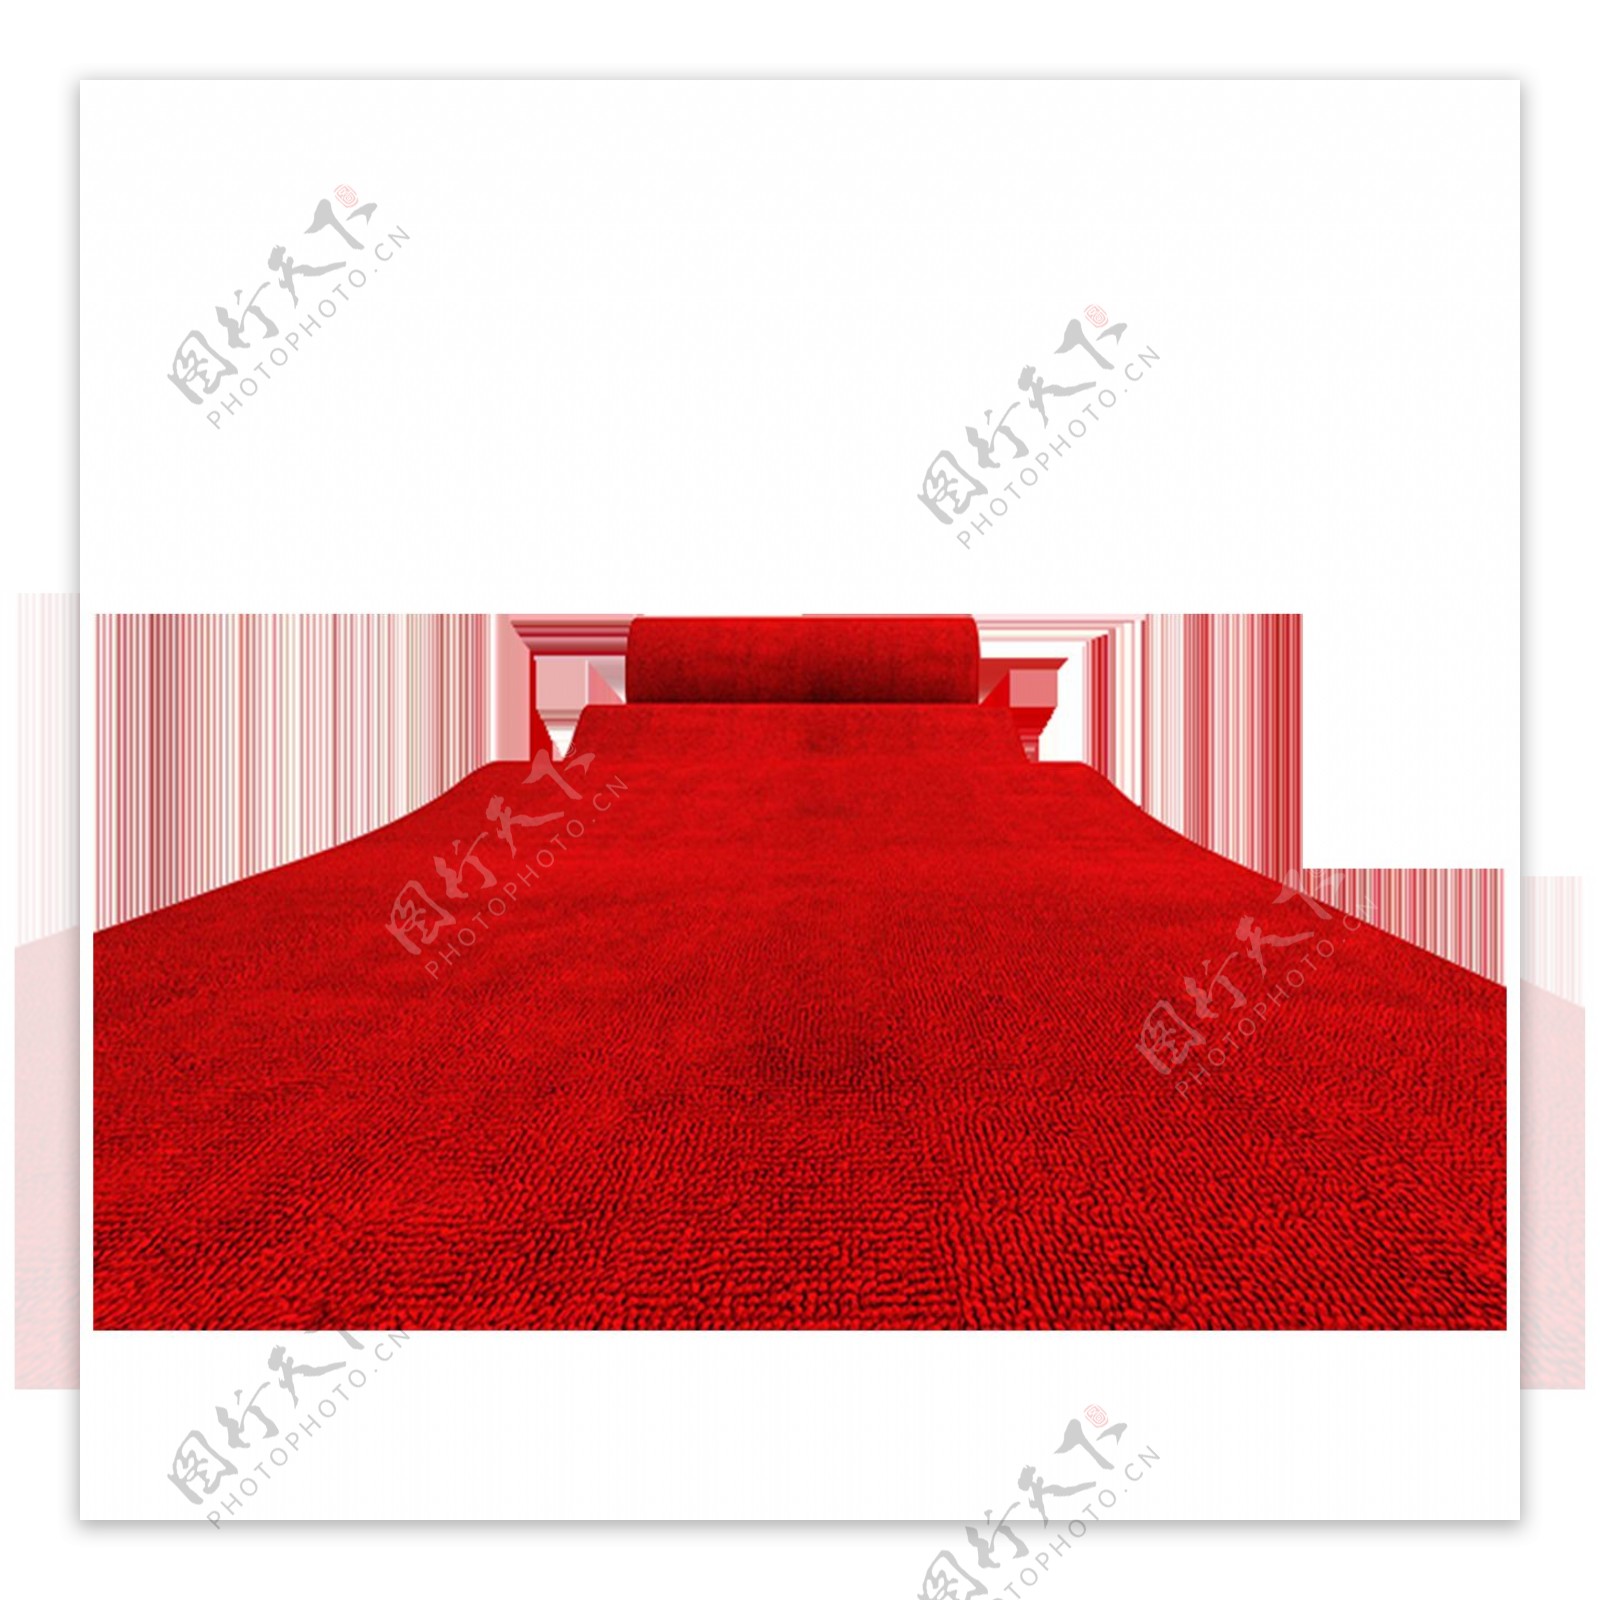 大气红色地毯元素